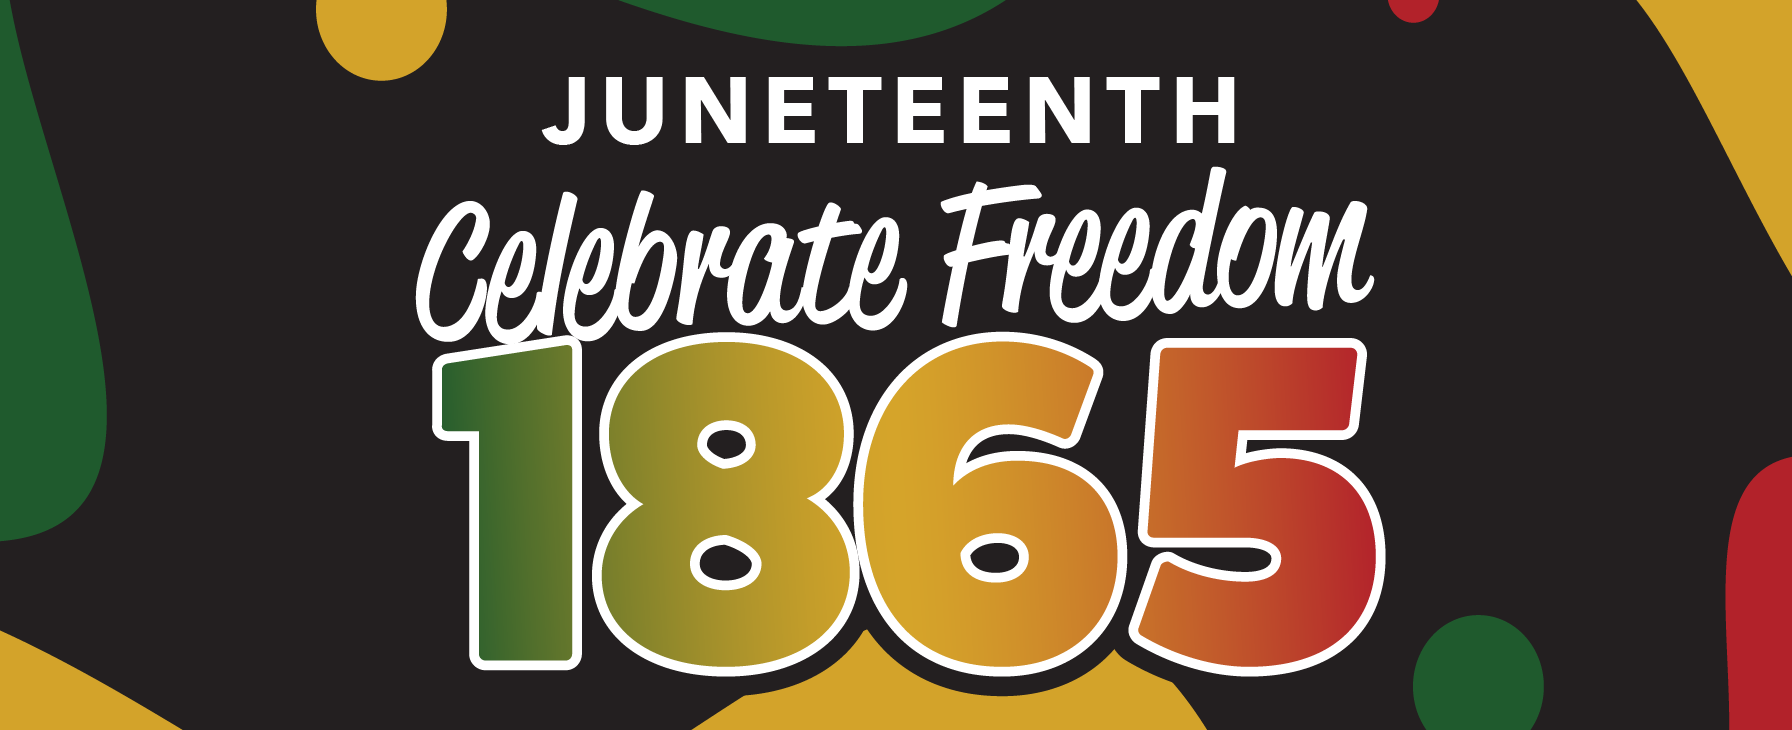 Juneteenth event logo